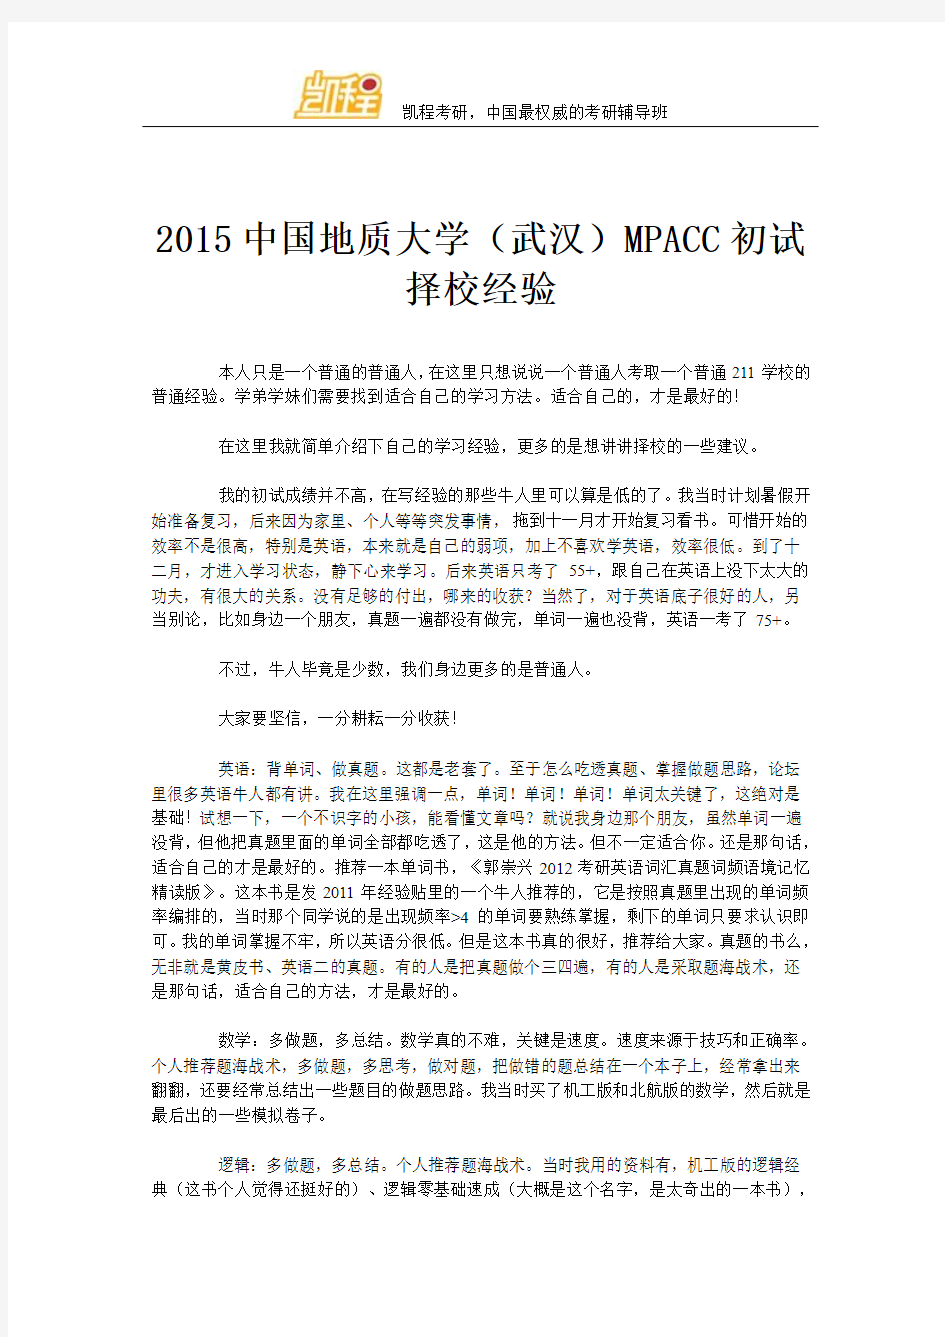 2015中国地质大学(武汉)MPACC初试择校经验